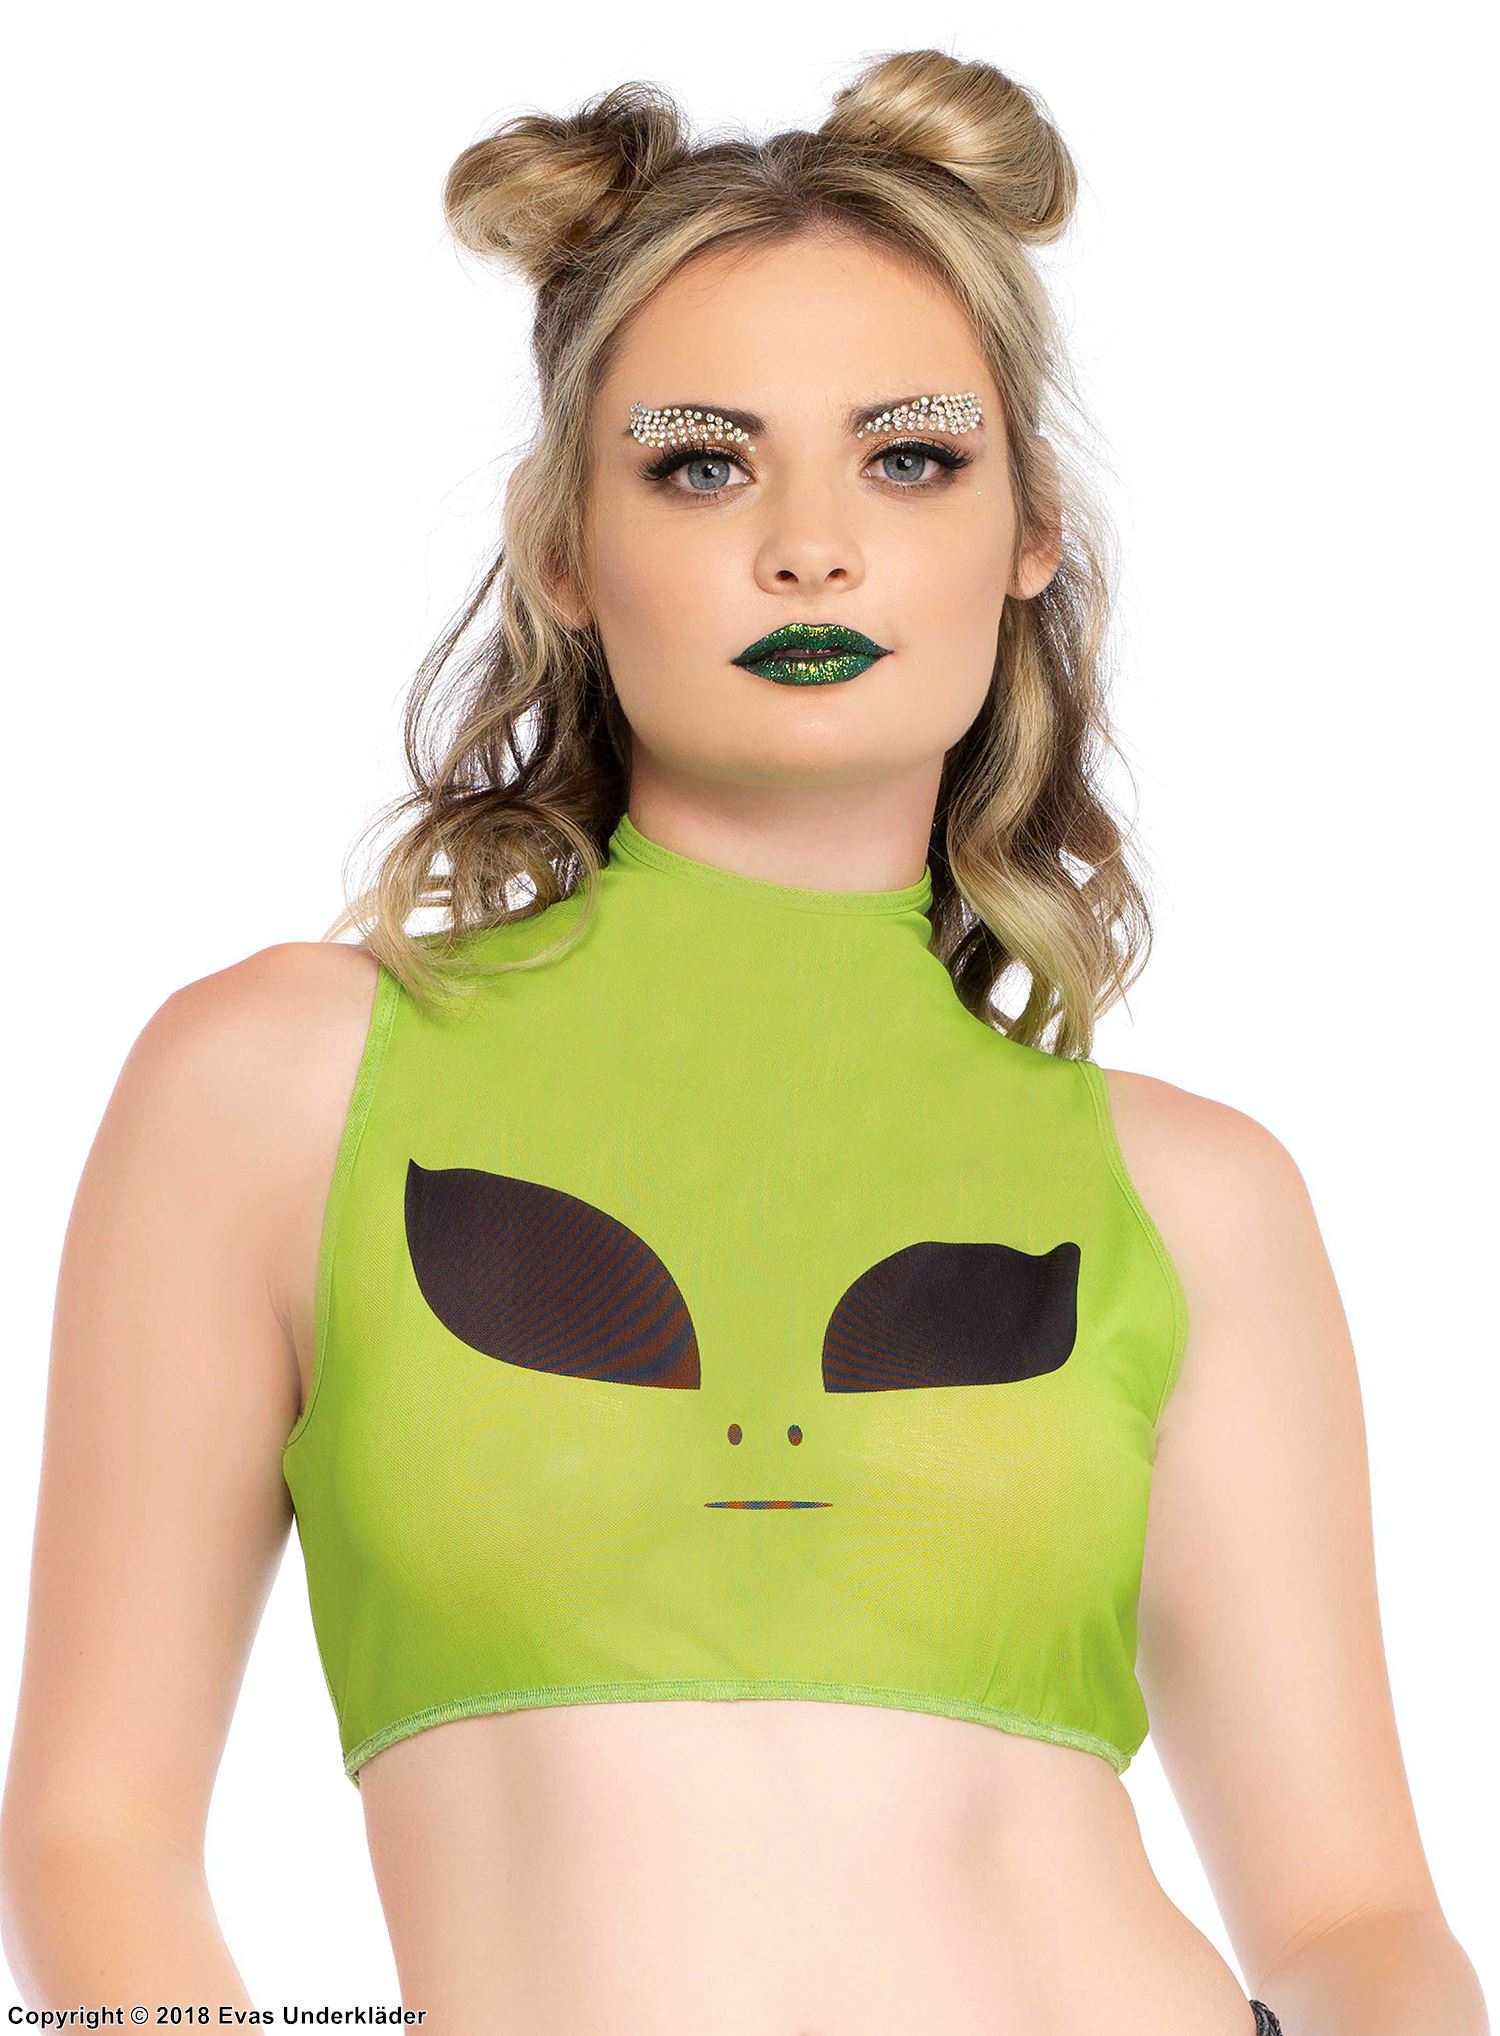 Crop top, mesh, sleeveless, turtle neck, alien